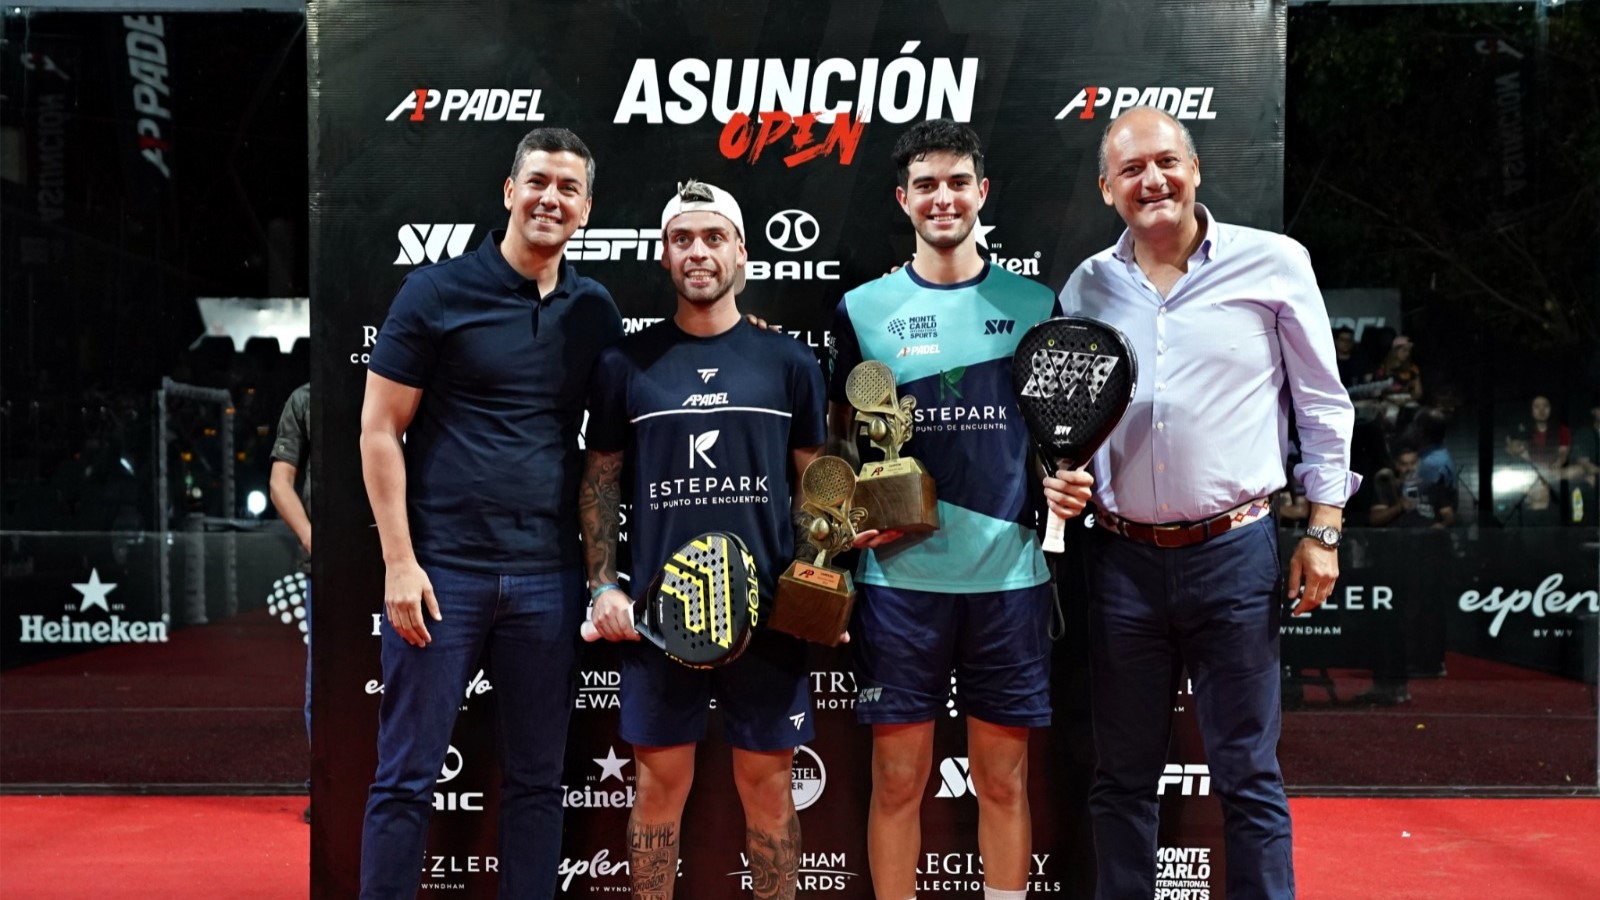 A1 Padel Asunción Open – ¡El título para De Pascual/Alfonso!